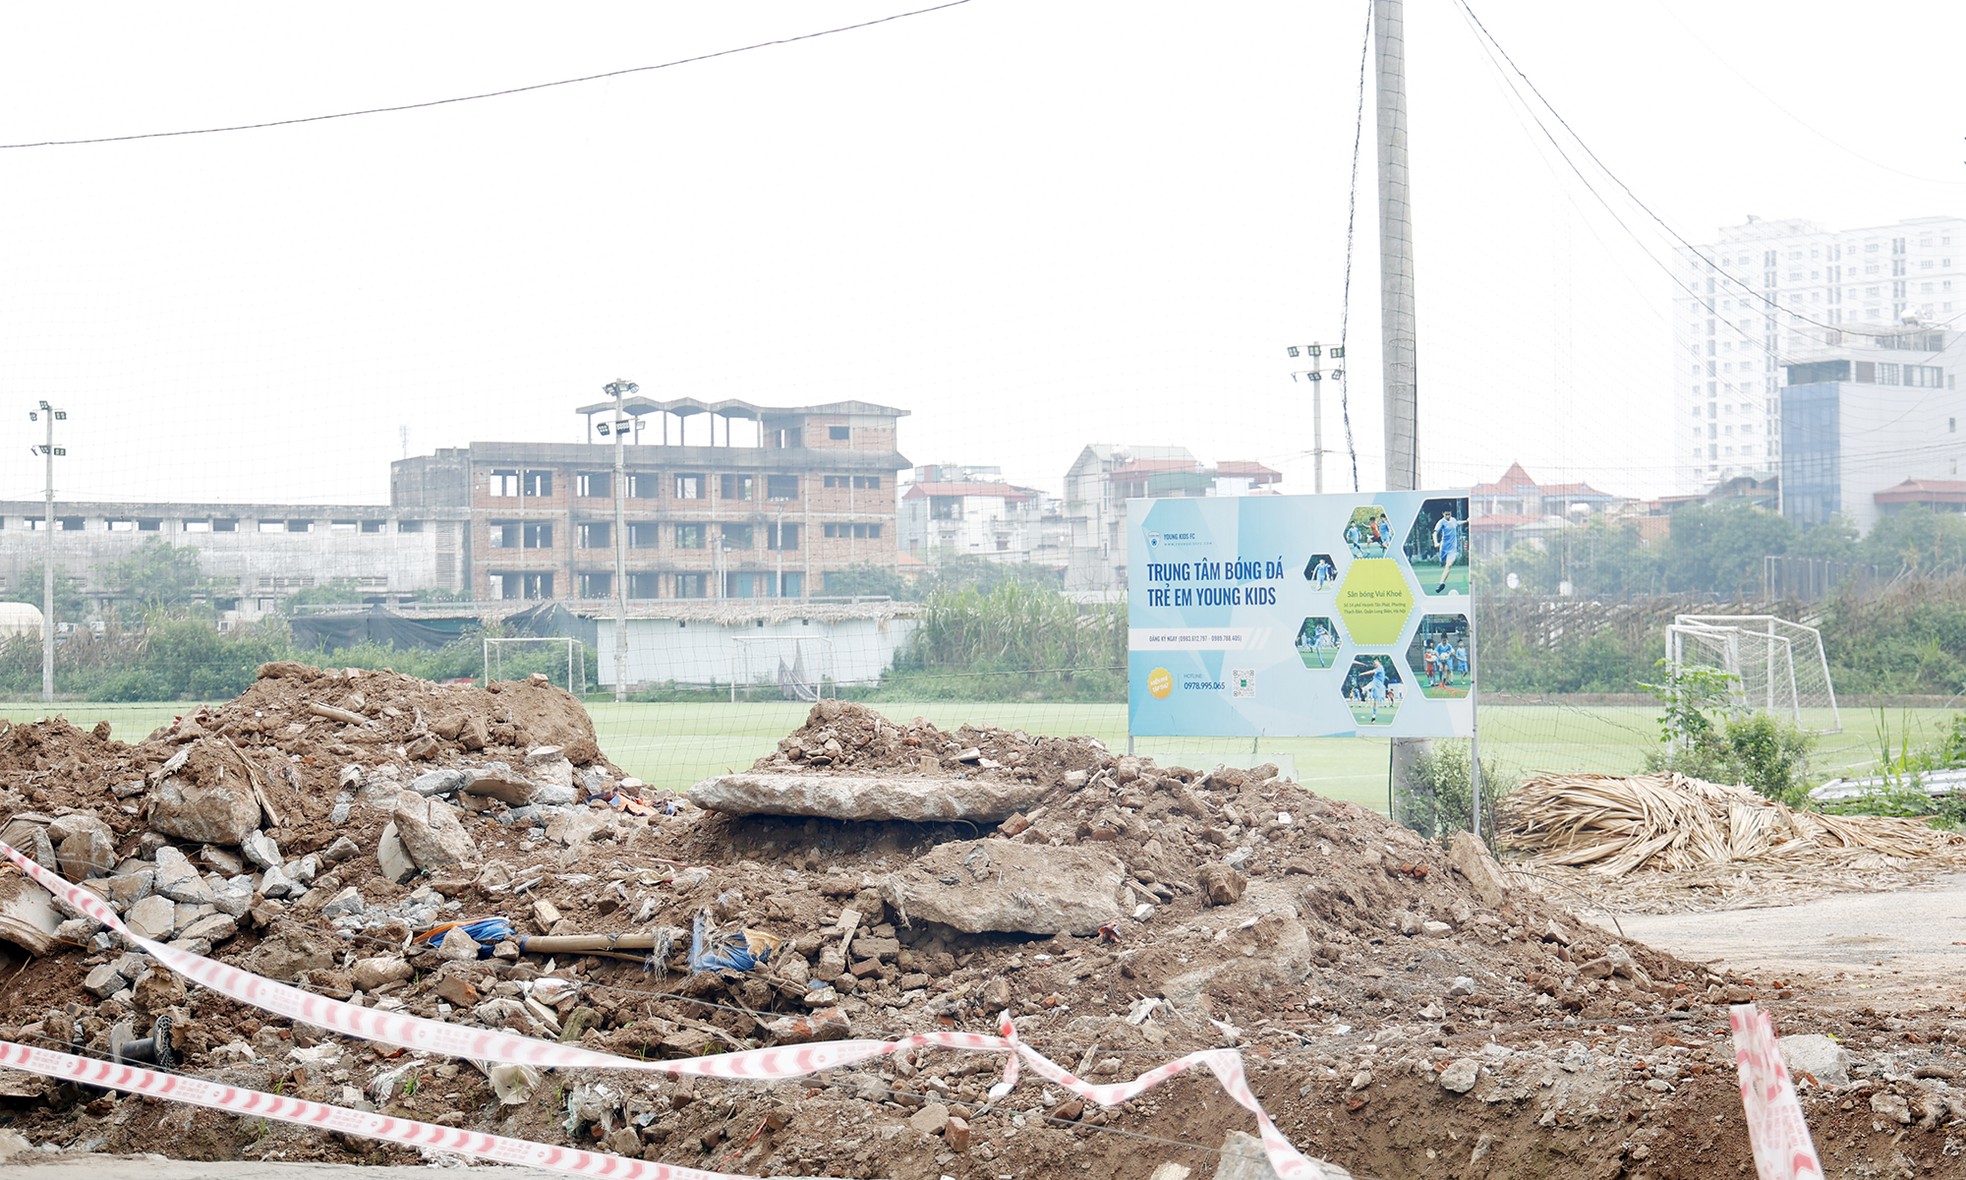 Cận cảnh dự án khu đô thị ở Hà Nội biến tướng thành sân bóng, cho thuê tùm lum - Ảnh 11.